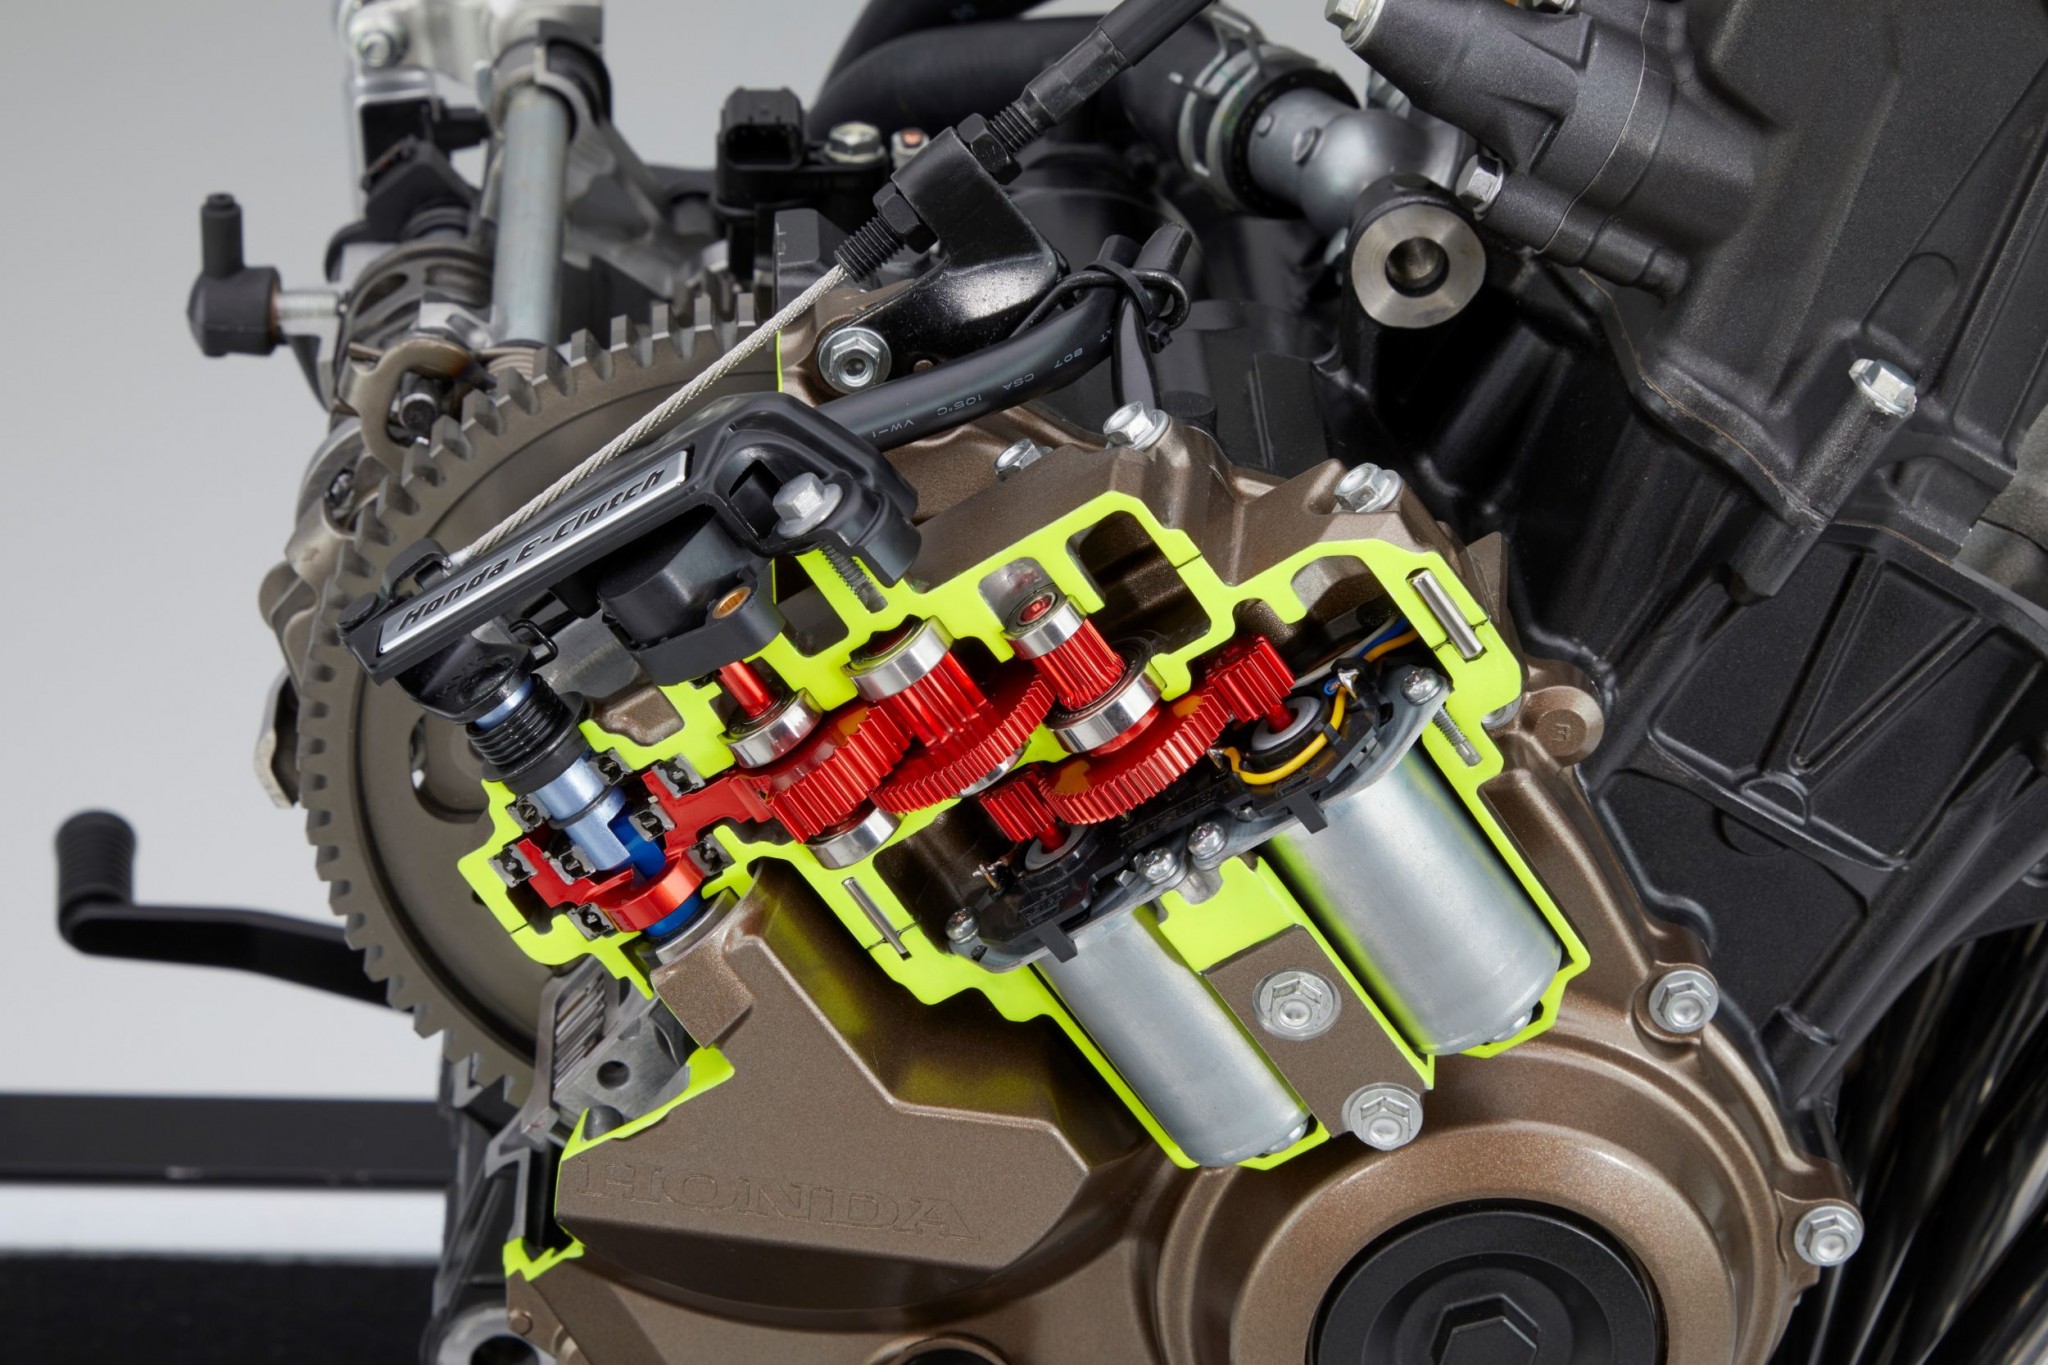 Test elektronske kvačila Honda CBR650R 2024

Honda je nedavno predstavila novu verziju svog popularnog motocikla CBR650R, koji sada dolazi sa elektronskim kvačilom, poznatim kao E-Clutch. Ova inovacija obećava da će olakšati vožnju omogućavajući vozačima da menjaju brzine bez potrebe za ručnim korišćenjem kvačila. 

Elektronsko kvačilo funkcioniše tako što automatski reguliše pritisak potreban za aktiviranje kvačila, što omogućava glatke promene brzina bez prekida u isporuci snage. Ovo je posebno korisno pri vožnji u gradu, gde česte promene brzina mogu biti naporne i otežavaju koncentraciju na saobraćaj.

Testiranje ovog sistema pokazalo je da E-Clutch ne samo da olakšava upravljanje motociklom, već i povećava sigurnost vožnje. Vozači mogu da se fokusiraju na okolinu bez brige o mehaničkim aspektima vožnje, što je posebno važno za manje iskusne vozače.

Honda CBR650R sa elektronskim kvačilom biće dostupna na tržištu od 2024. godine i očekuje se da će privući veliki broj kupaca, kako iskusnih tako i onih koji tek ulaze u svet motociklizma. Ovaj model predstavlja značajan korak napred u tehnologiji motocikala i potencijalno postavlja nove standarde u industriji. - Слика 23